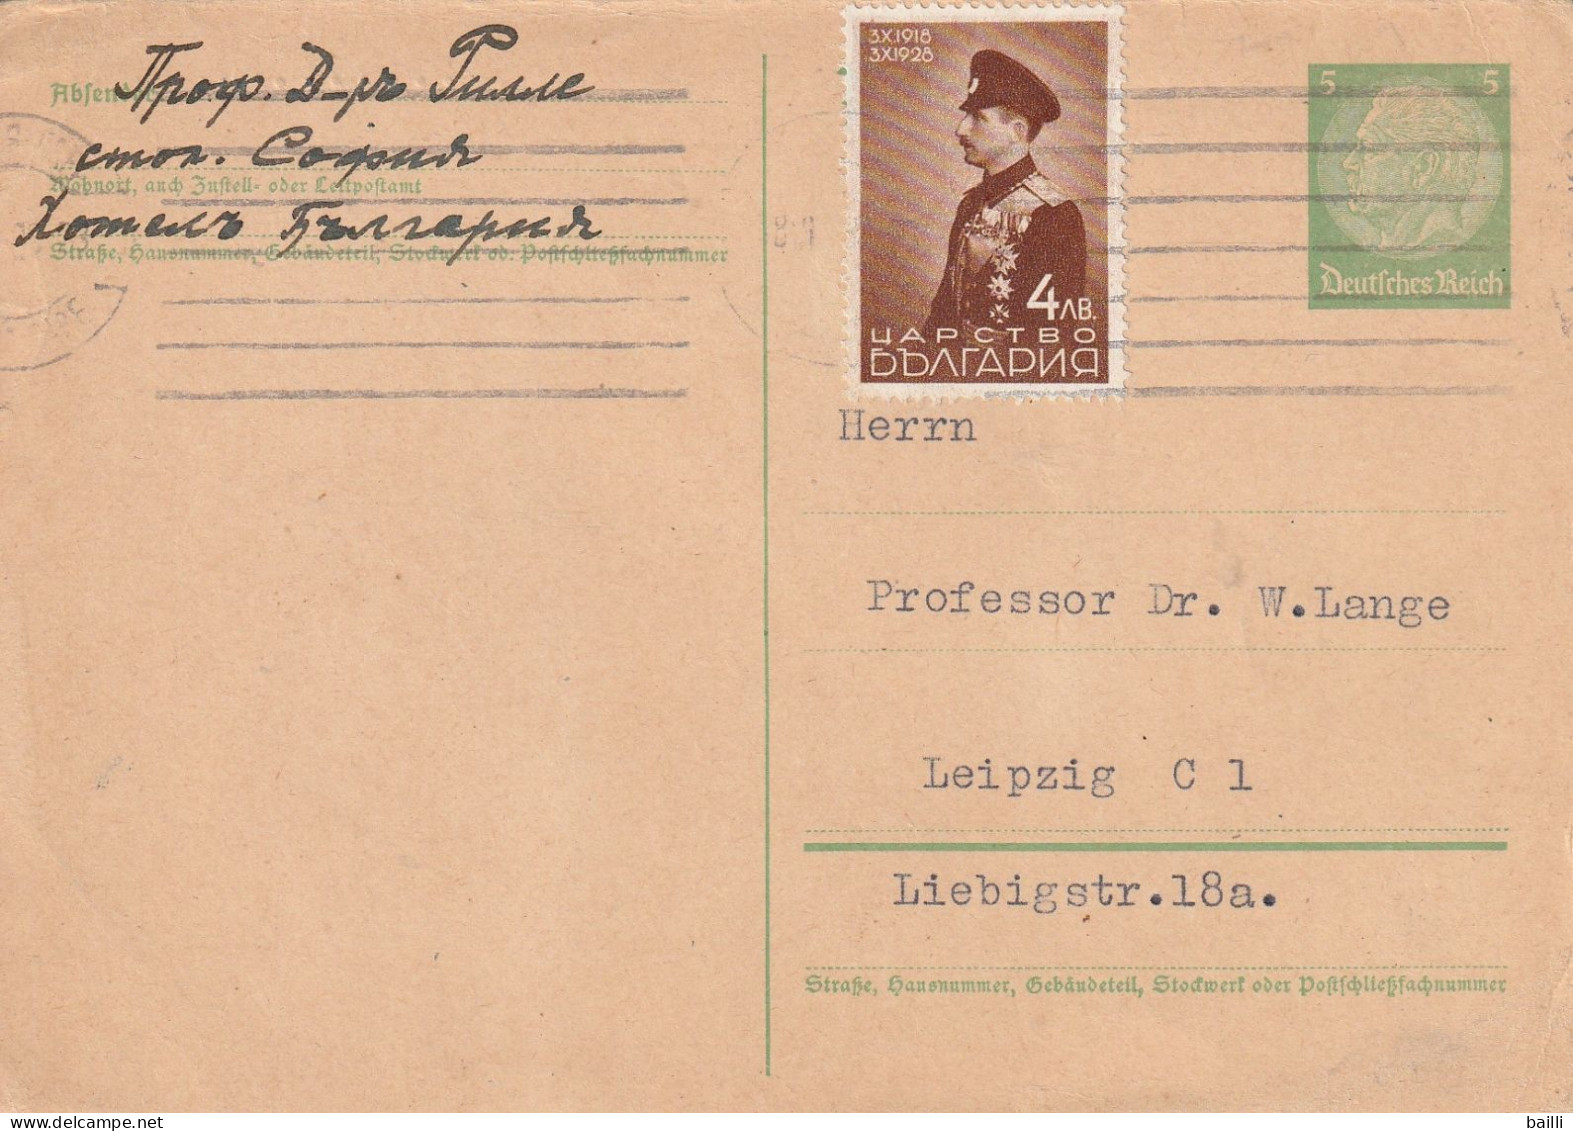 Bulgarie Entier Postal Réponse Payée Allemand Pour Leipzig 1939 - Cartes Postales